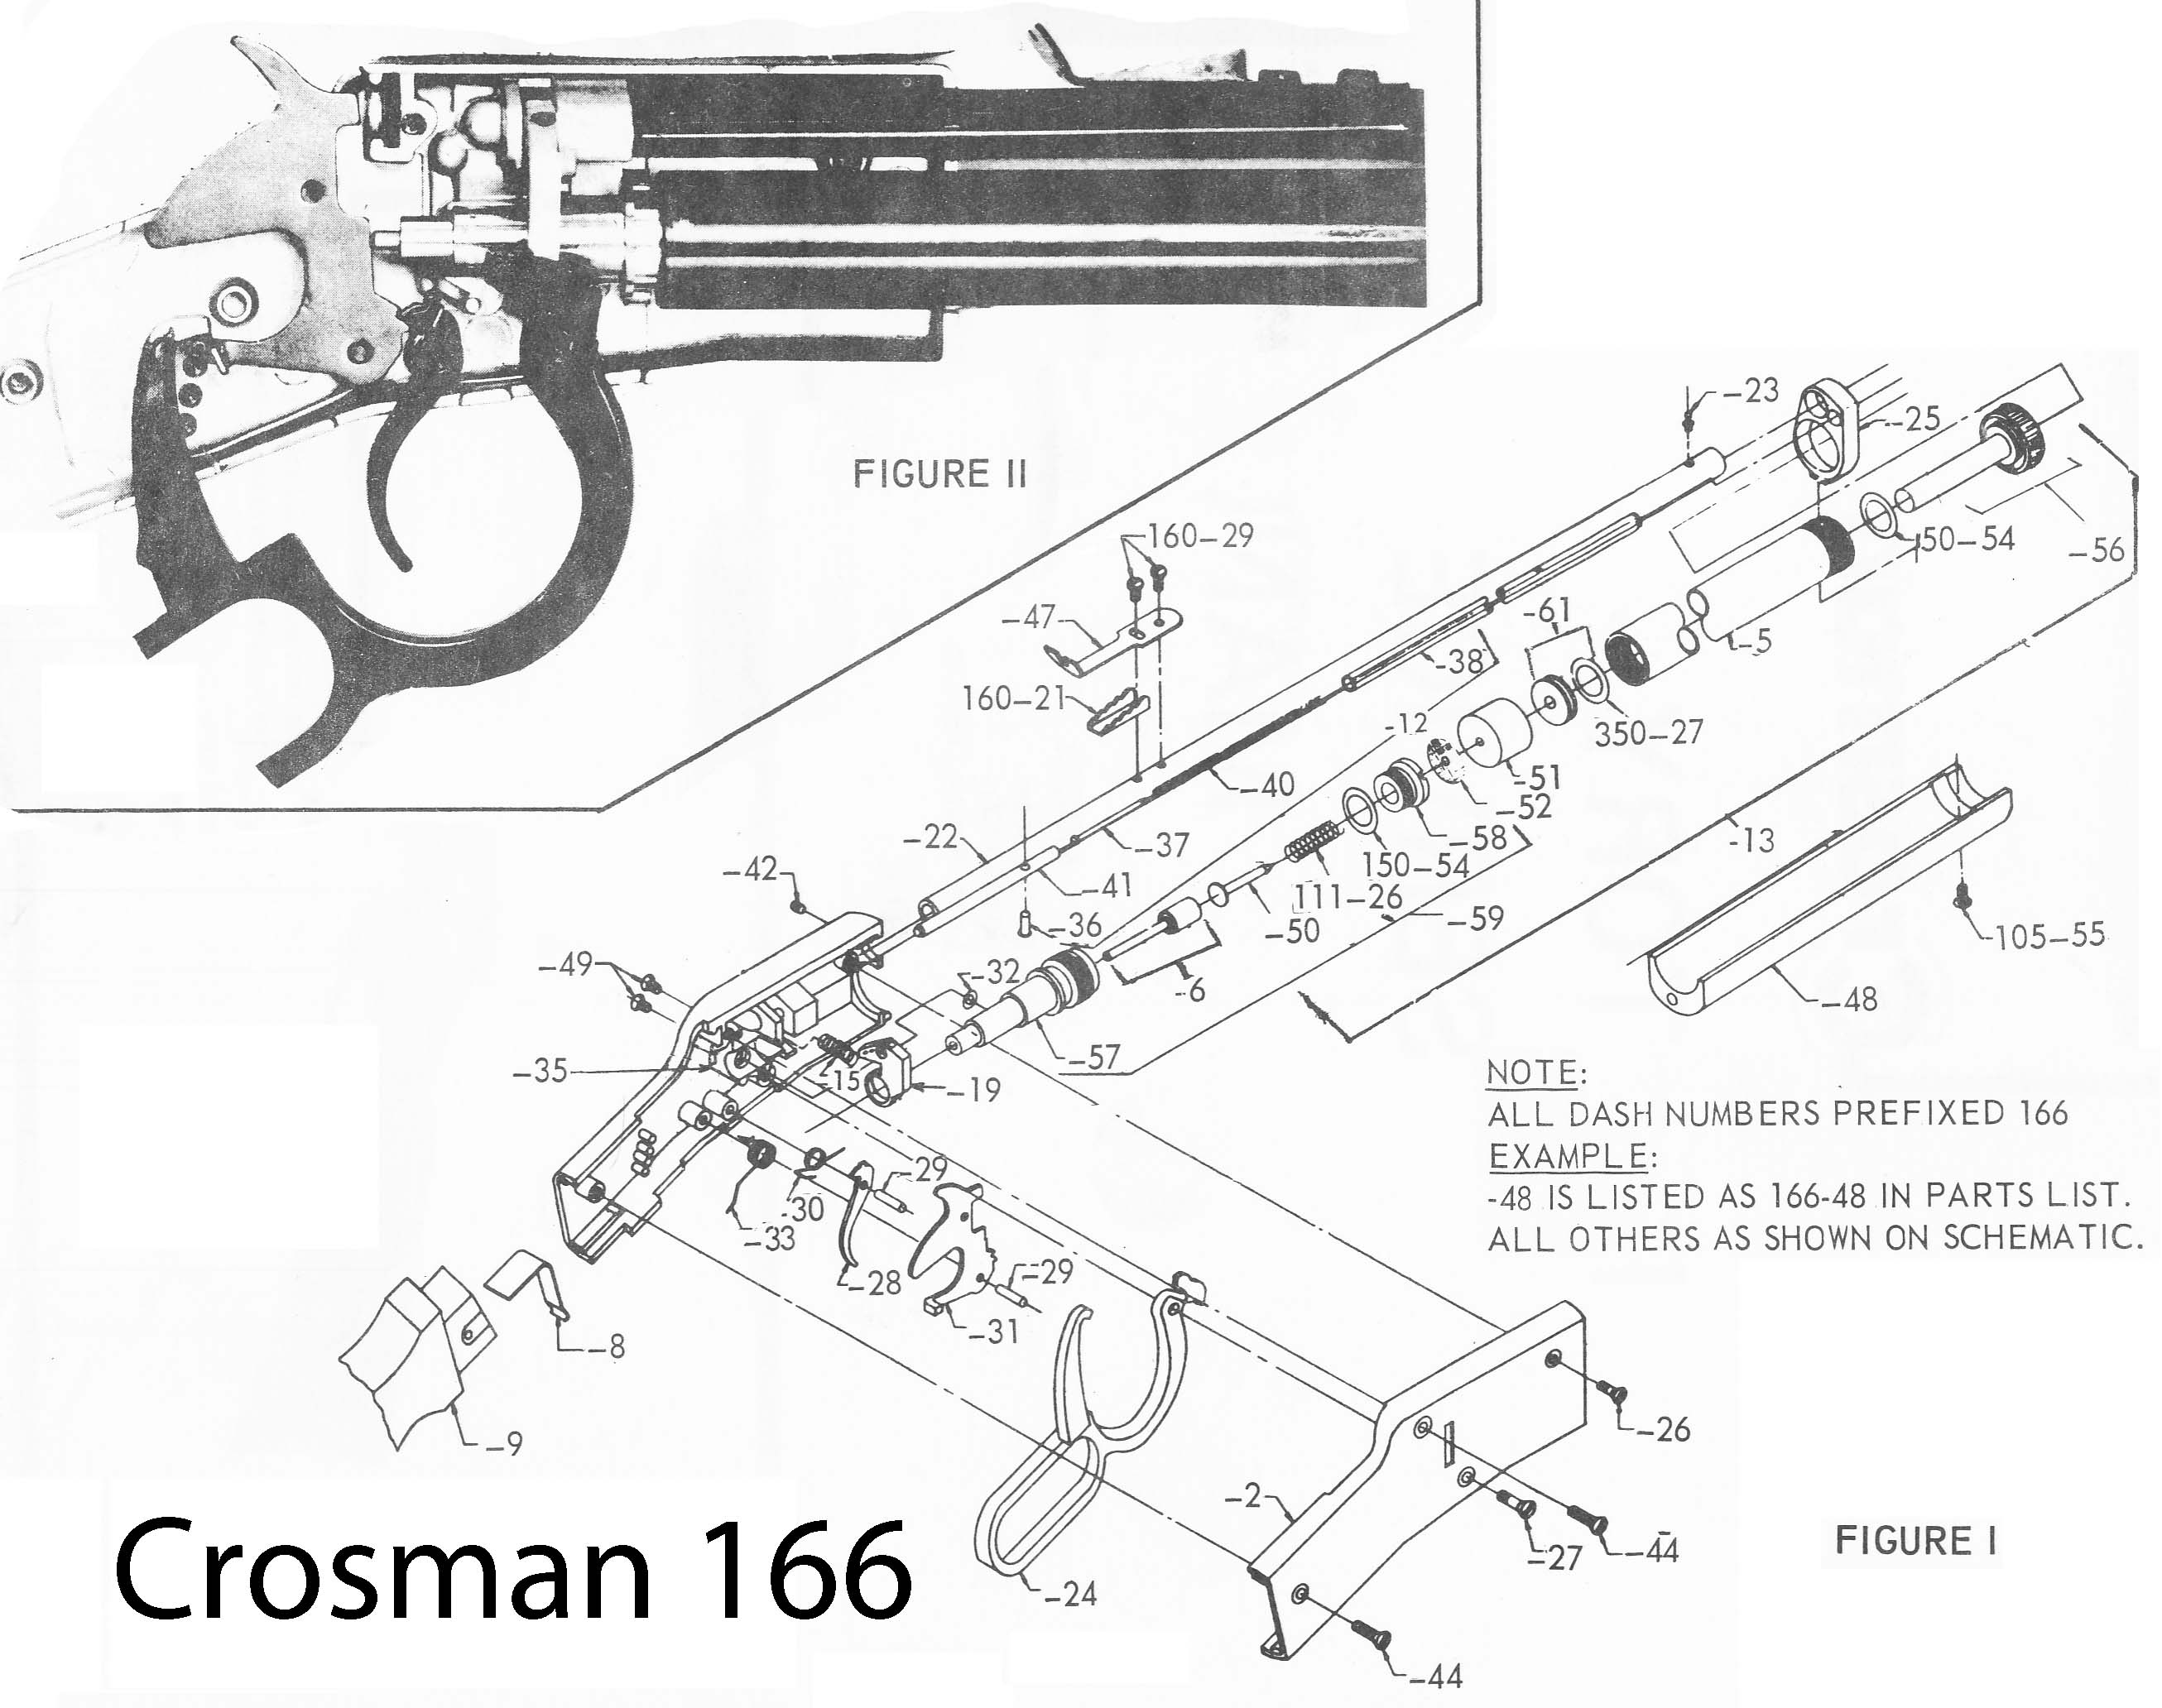 Super BB Repeater / Crosman 166 Schematic